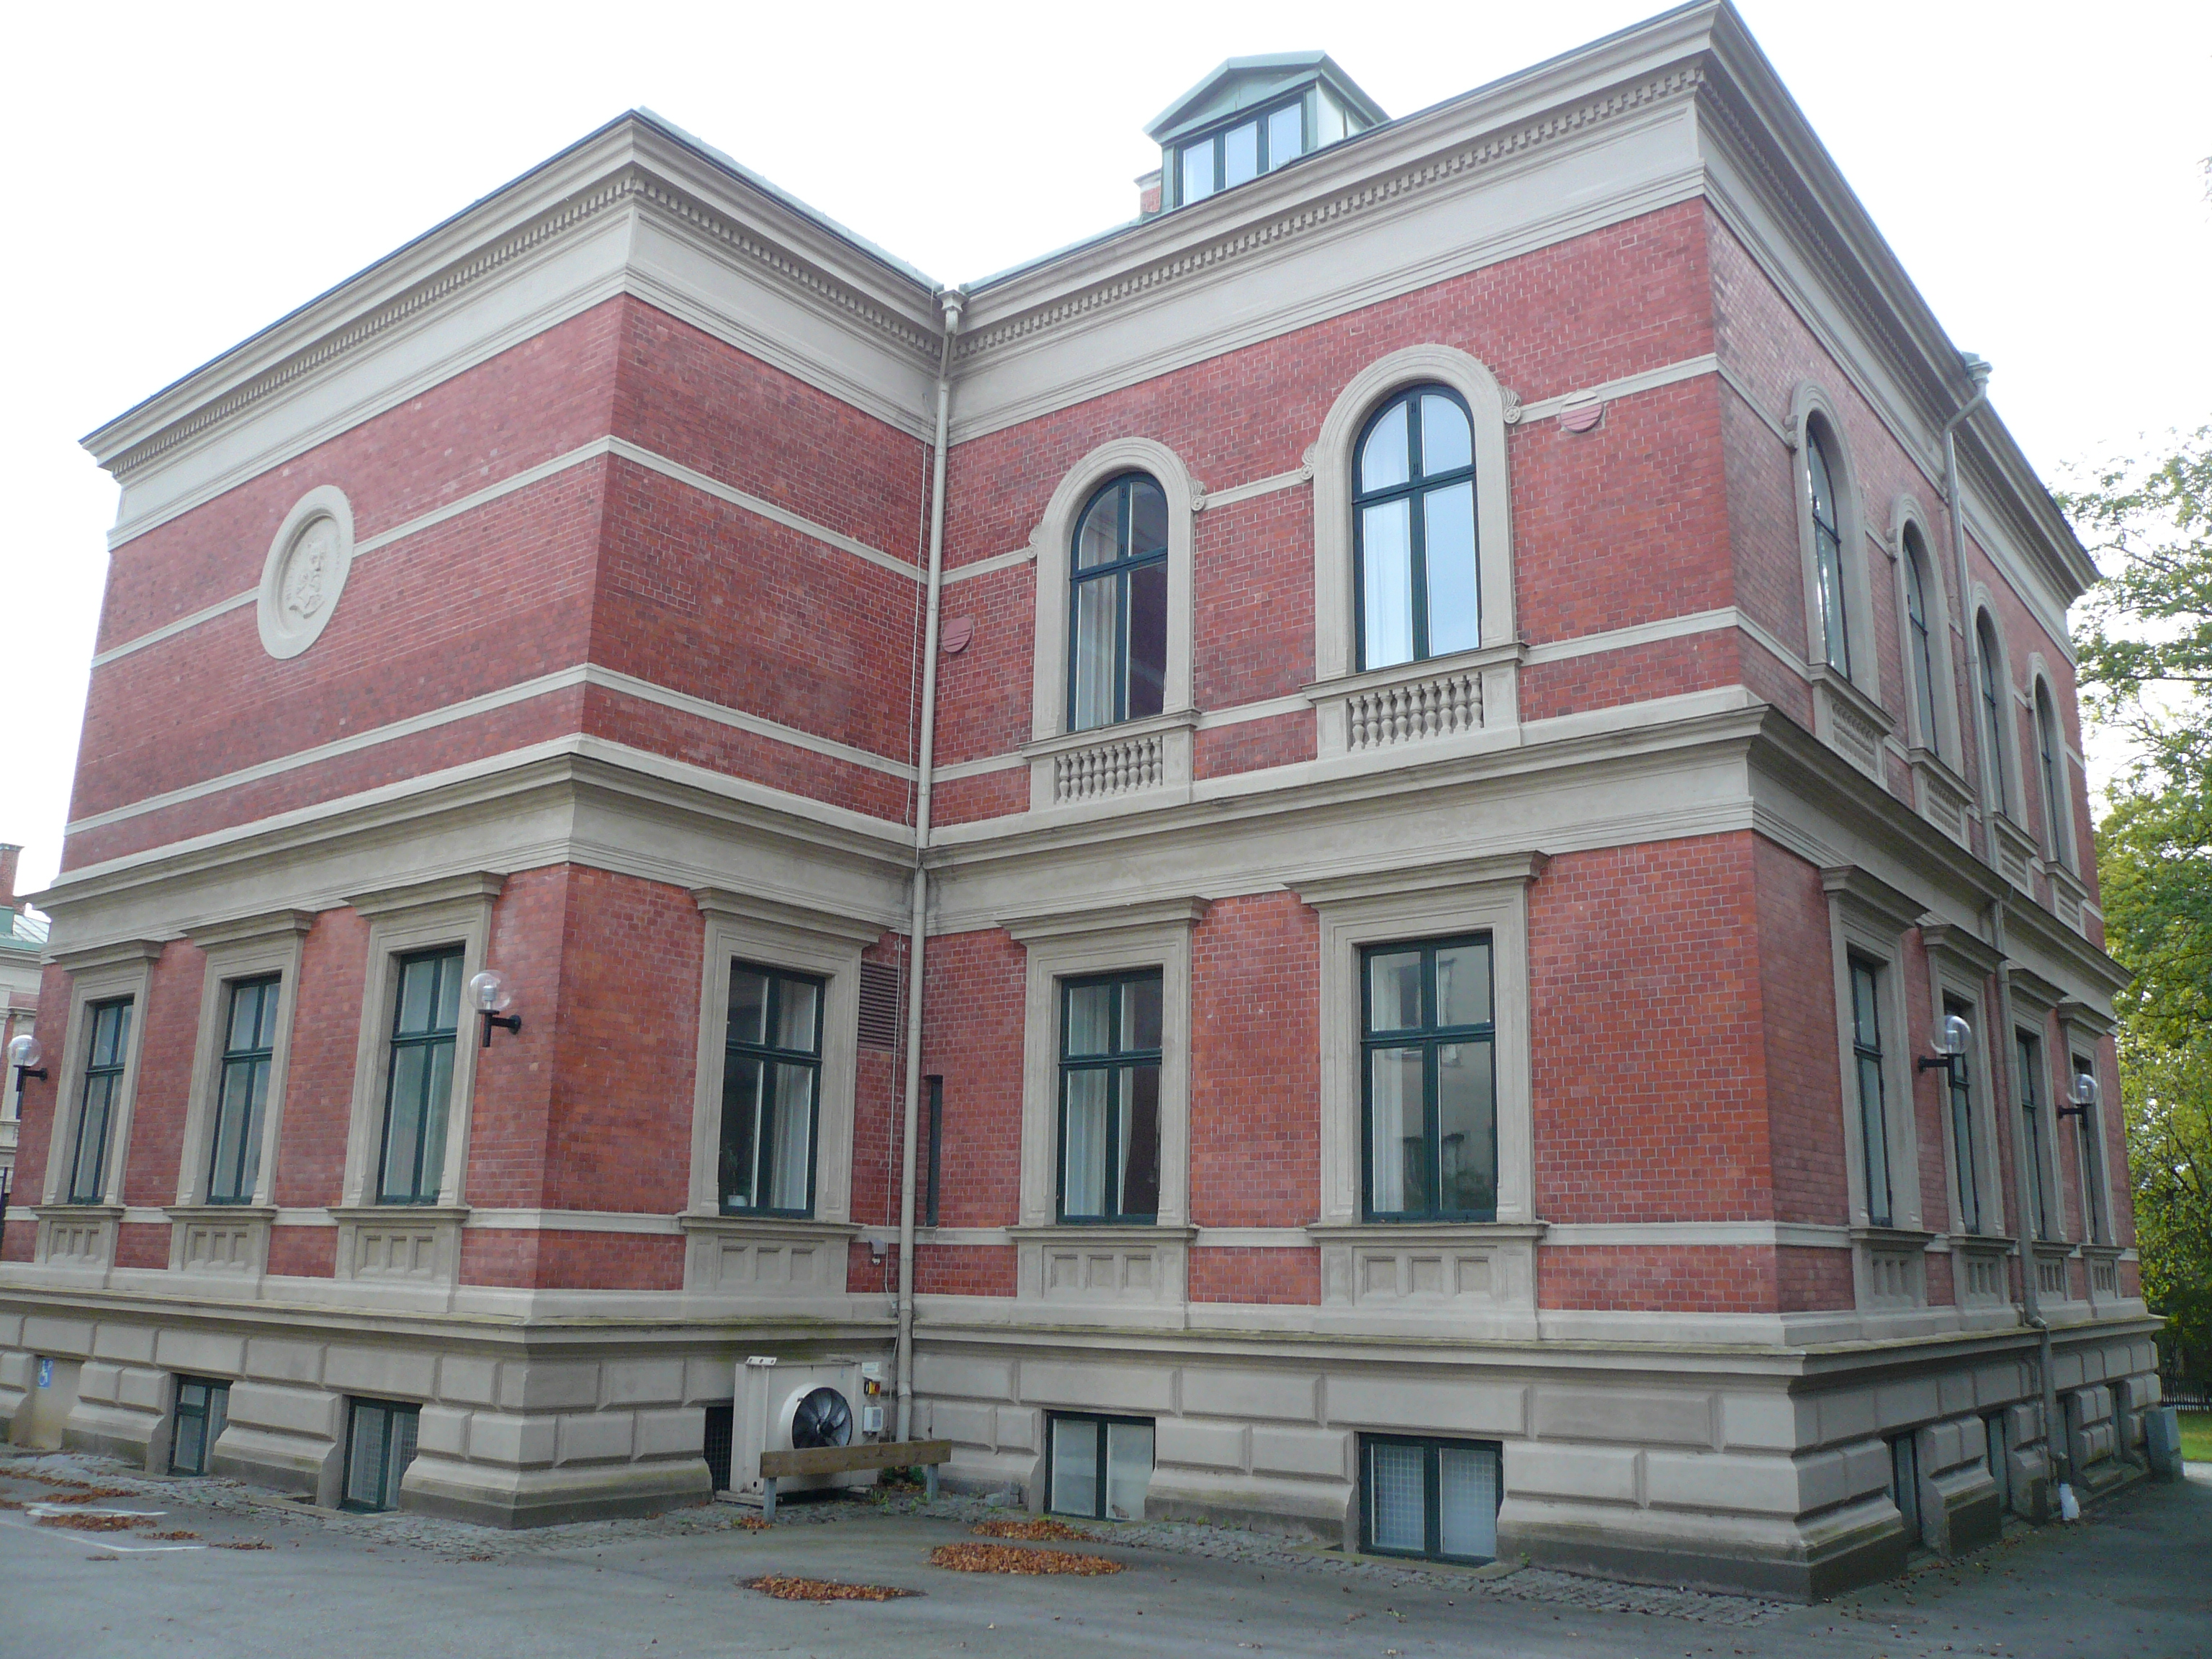 Hyphoff 5. Hstologiska institutionen. Den norra och västra fasaden.